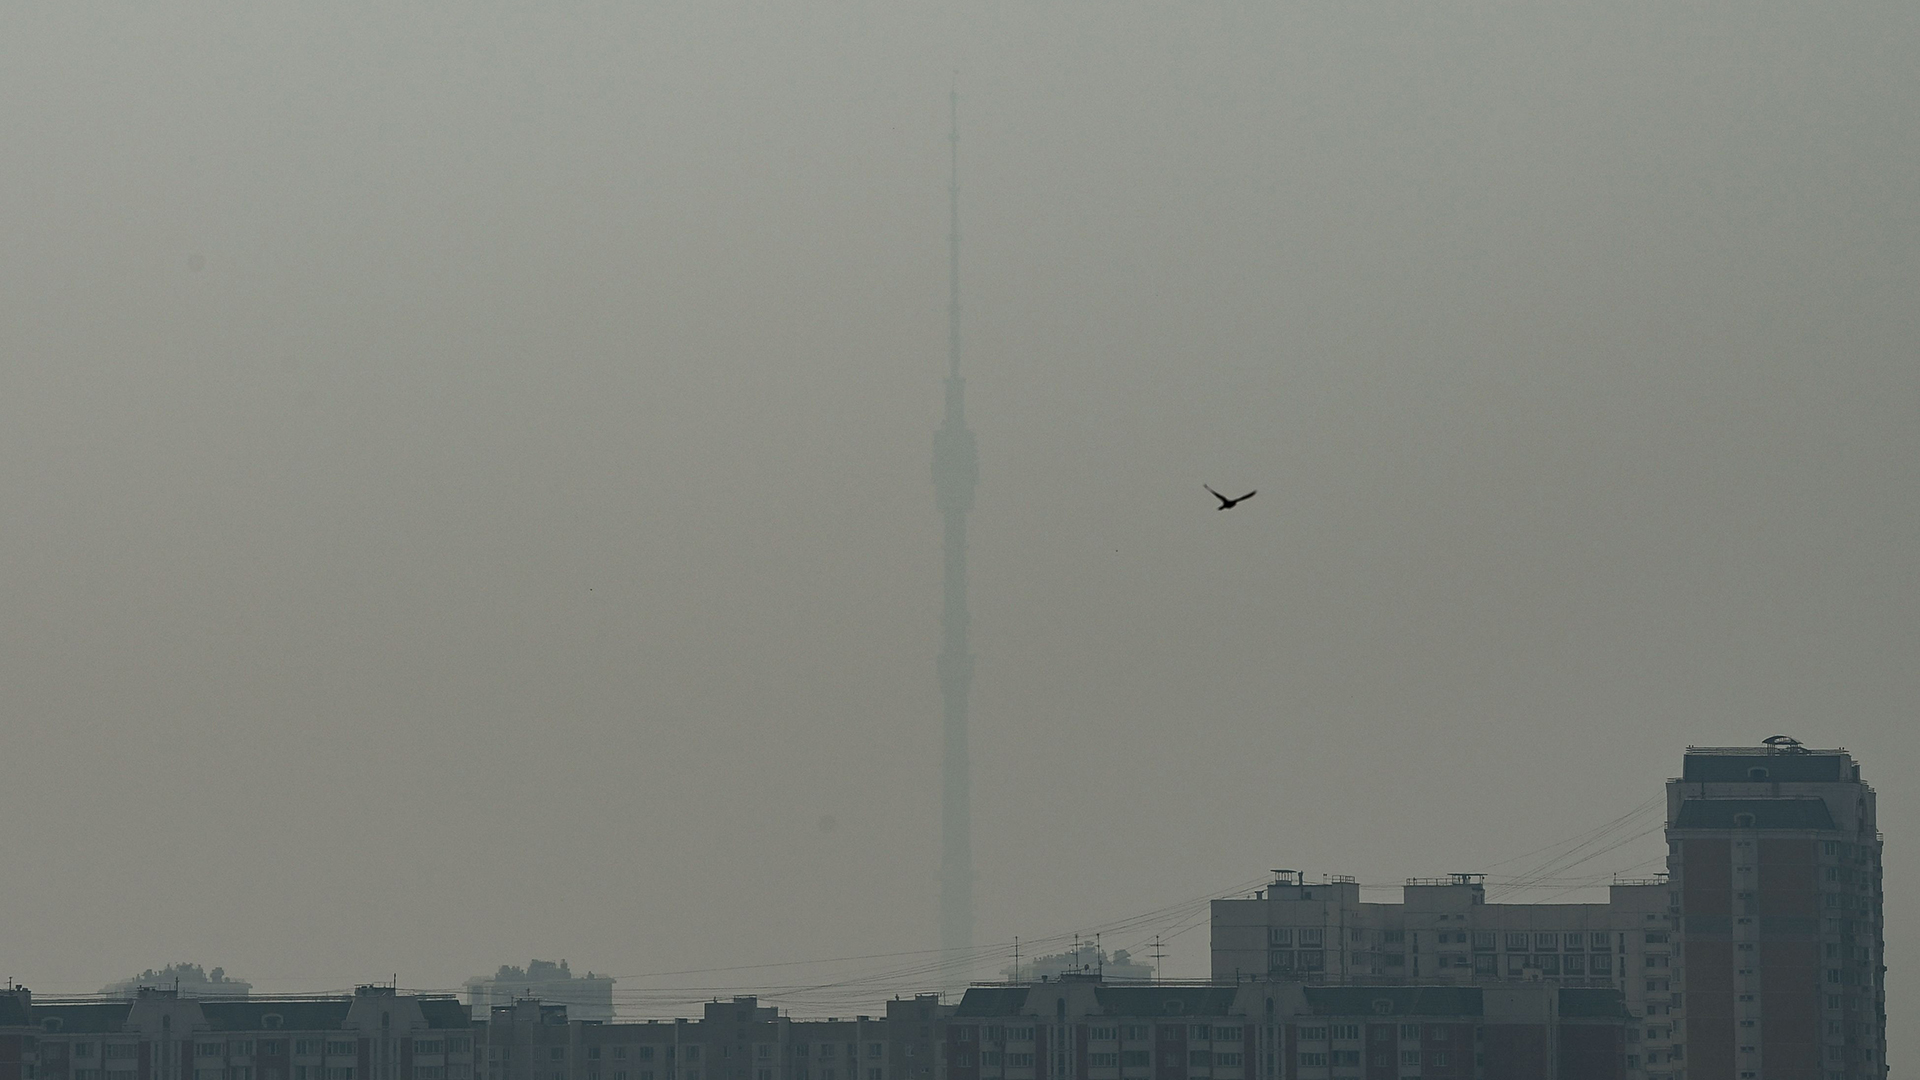 Die Aufnahme zeigt den 540 Meter hohen Ostankino-Fernsehturm in Moskau (Russland) im Smog. | AFP